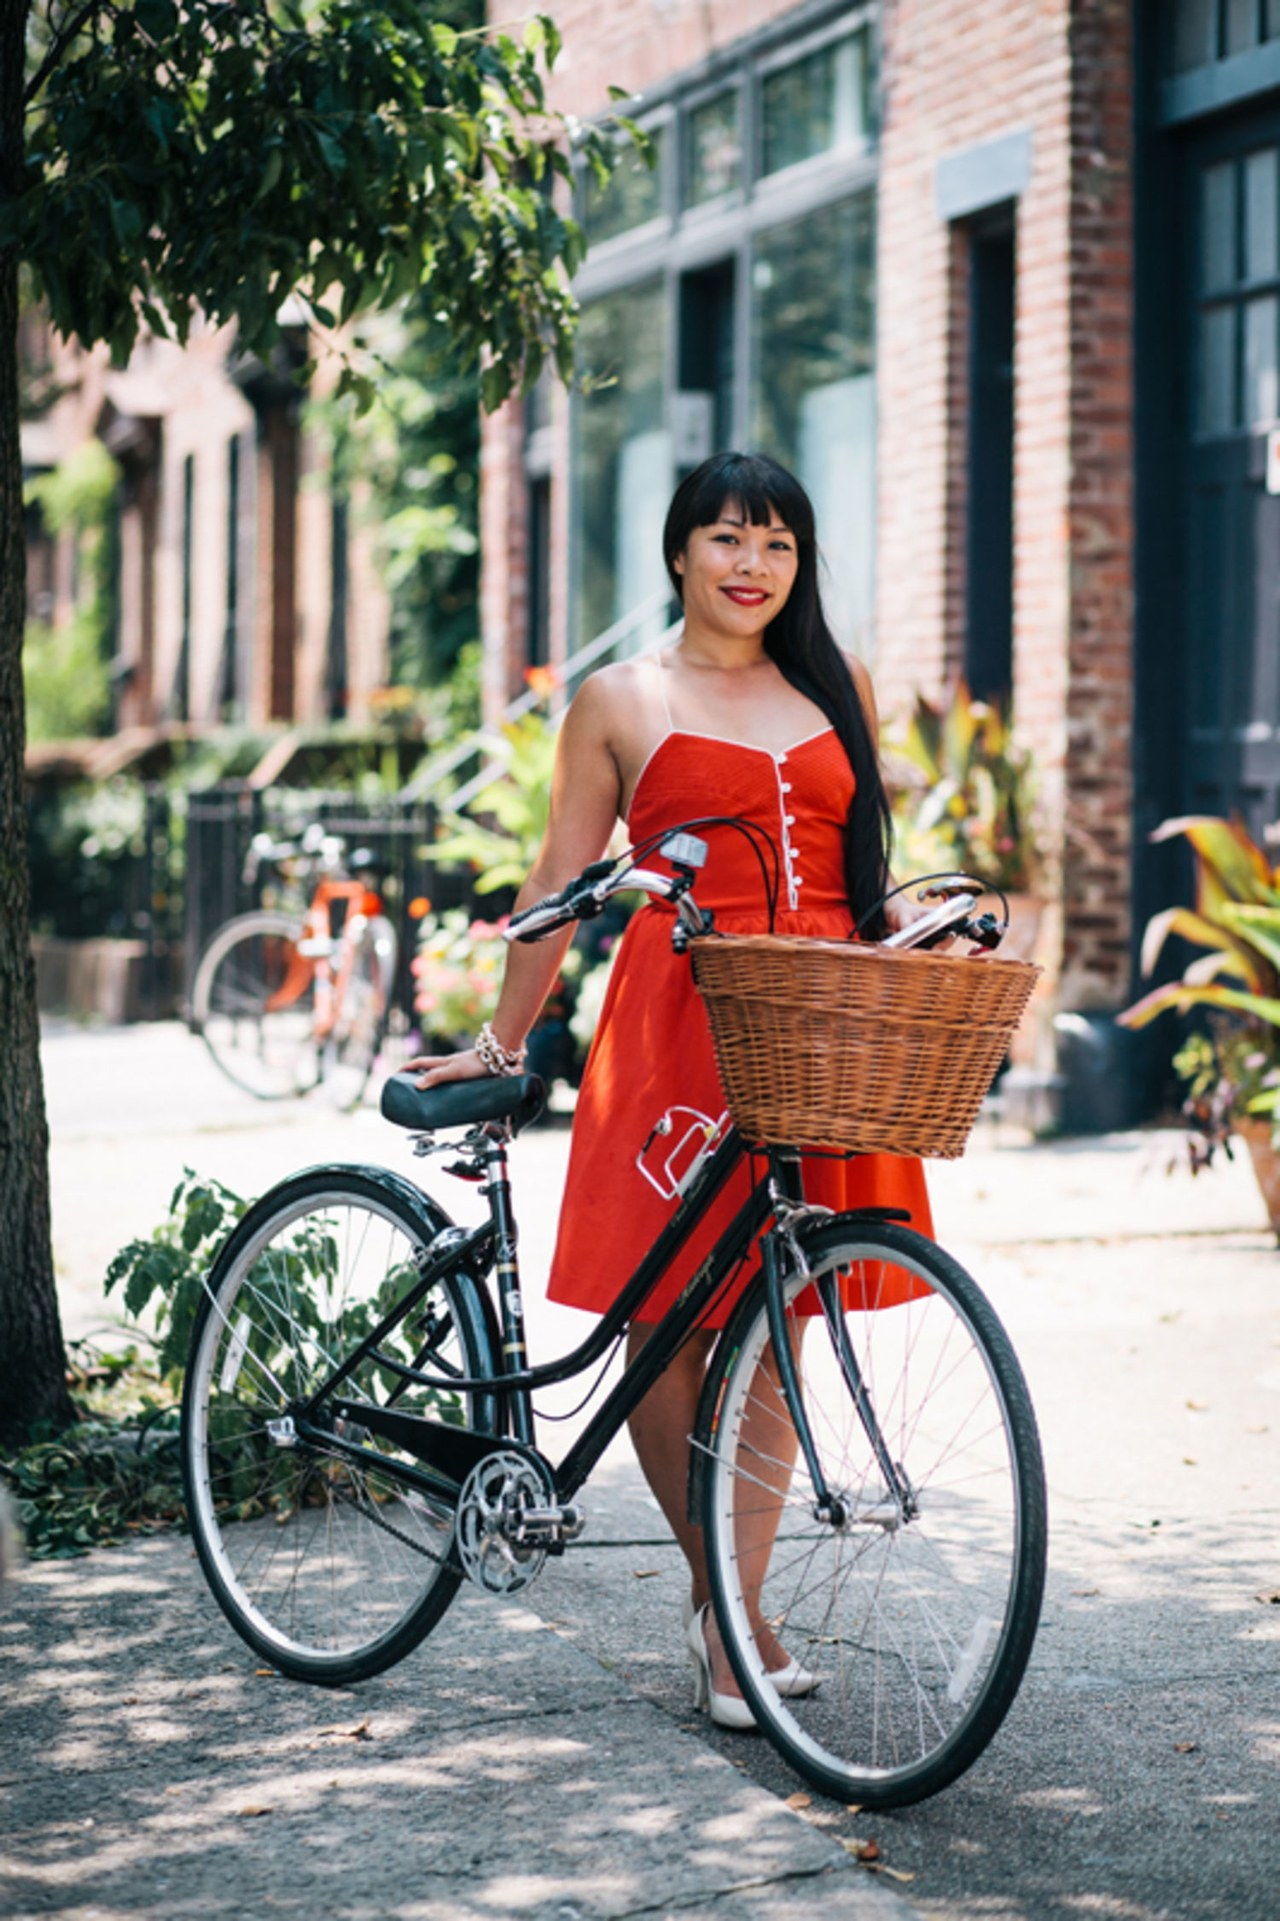 فضل mode girl on bike red dress